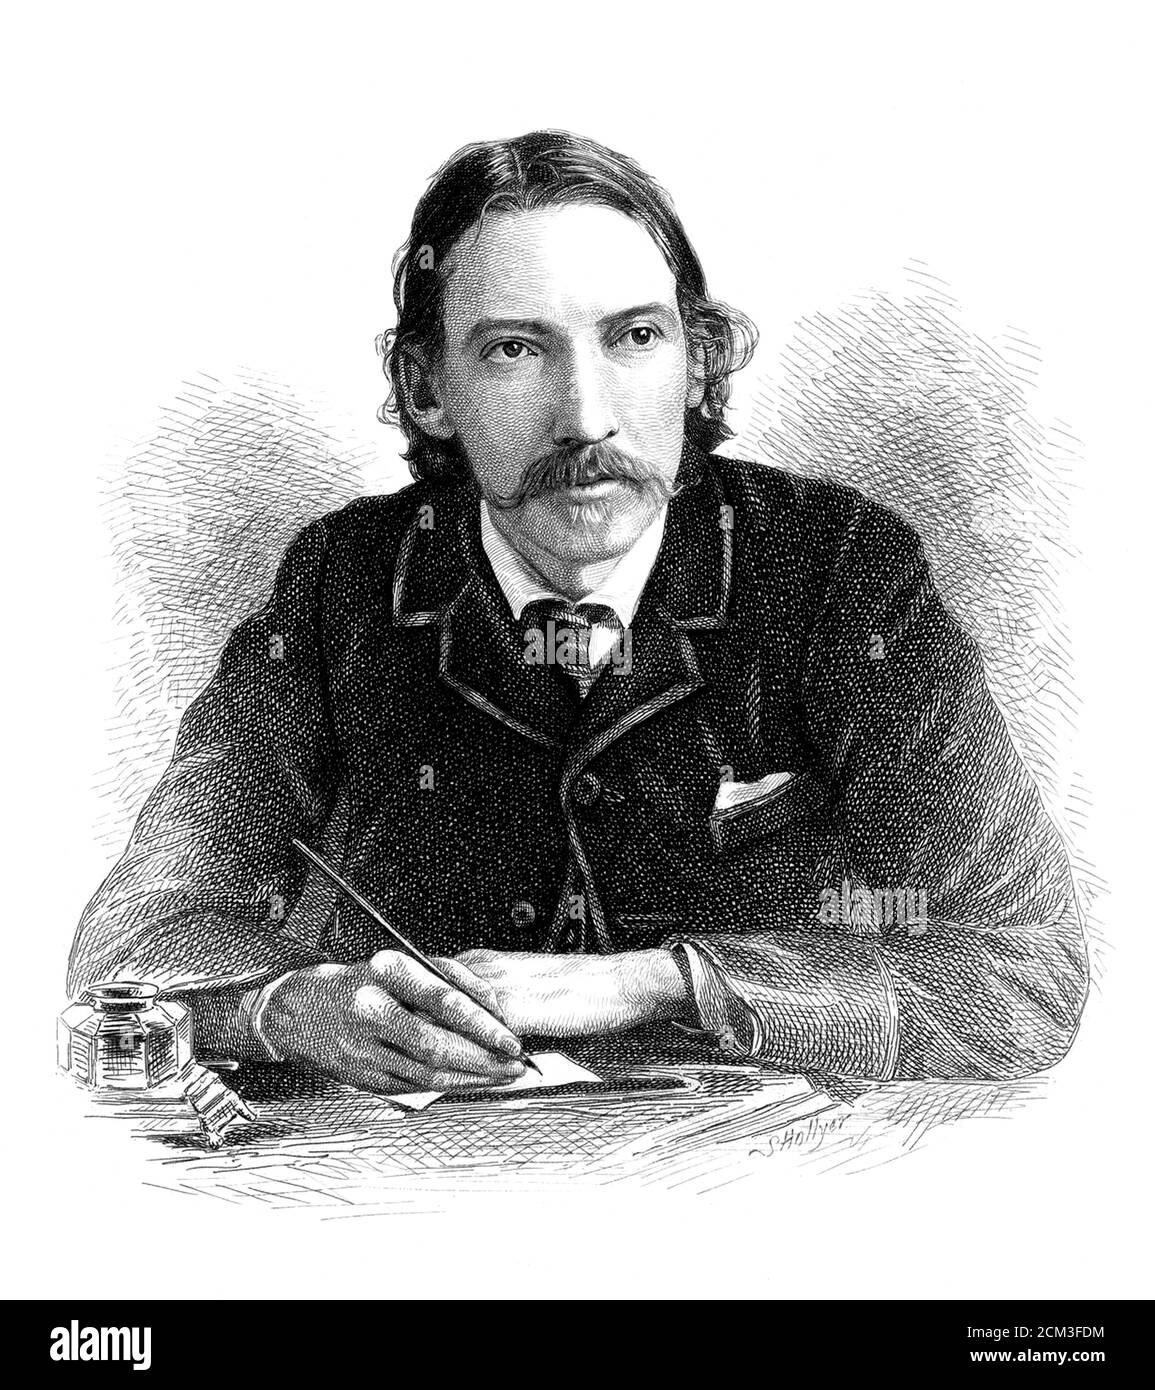 1885 c. , GRAND BRETAGNA : der berühmte Schriftsteller Robert LOUIS STEVENSON ( 1850 - 1894 ). Portrait von S. Hollyer , nach einem Foto von James Notman ( 1849 - 1932 ). - GESCHICHTE - FOTO STORICHE - PORTRAIT - SCRITTORE - SCHRIFTSTELLER - LETTERATURA - LITERATUR - ILLUSTRATION - INCISIONE --- ARCHIVIO GBB Stockfoto